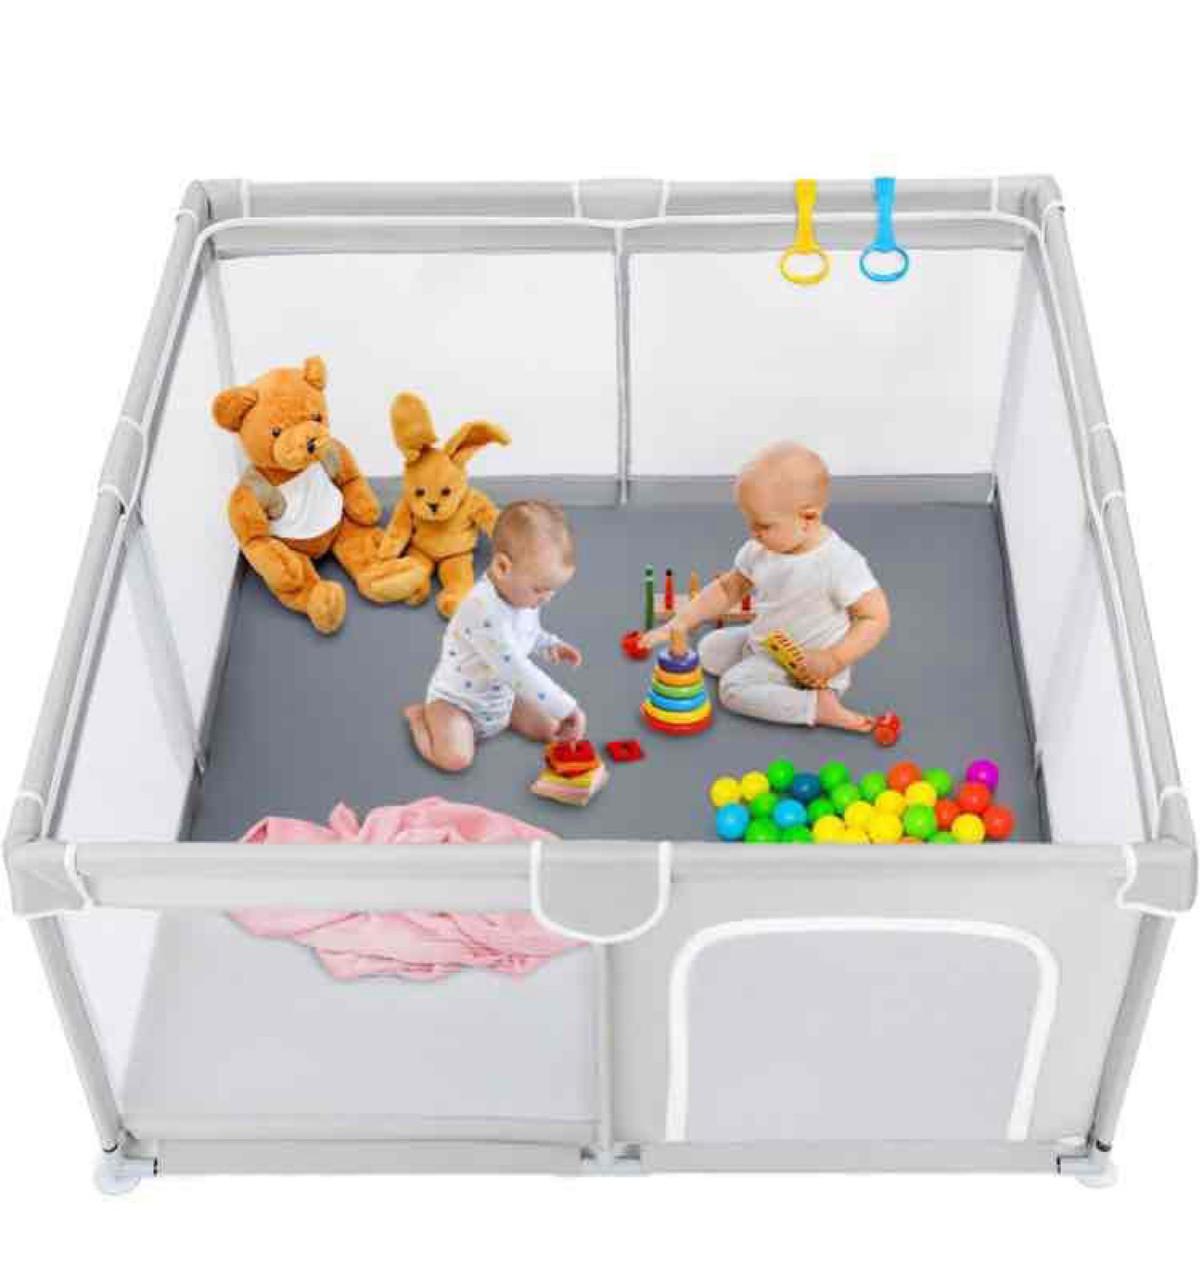 TODALE Baby Playpen, Medium Playpen for Babies and Toddlers, Indoor & Outdoor Kids Activity Center,